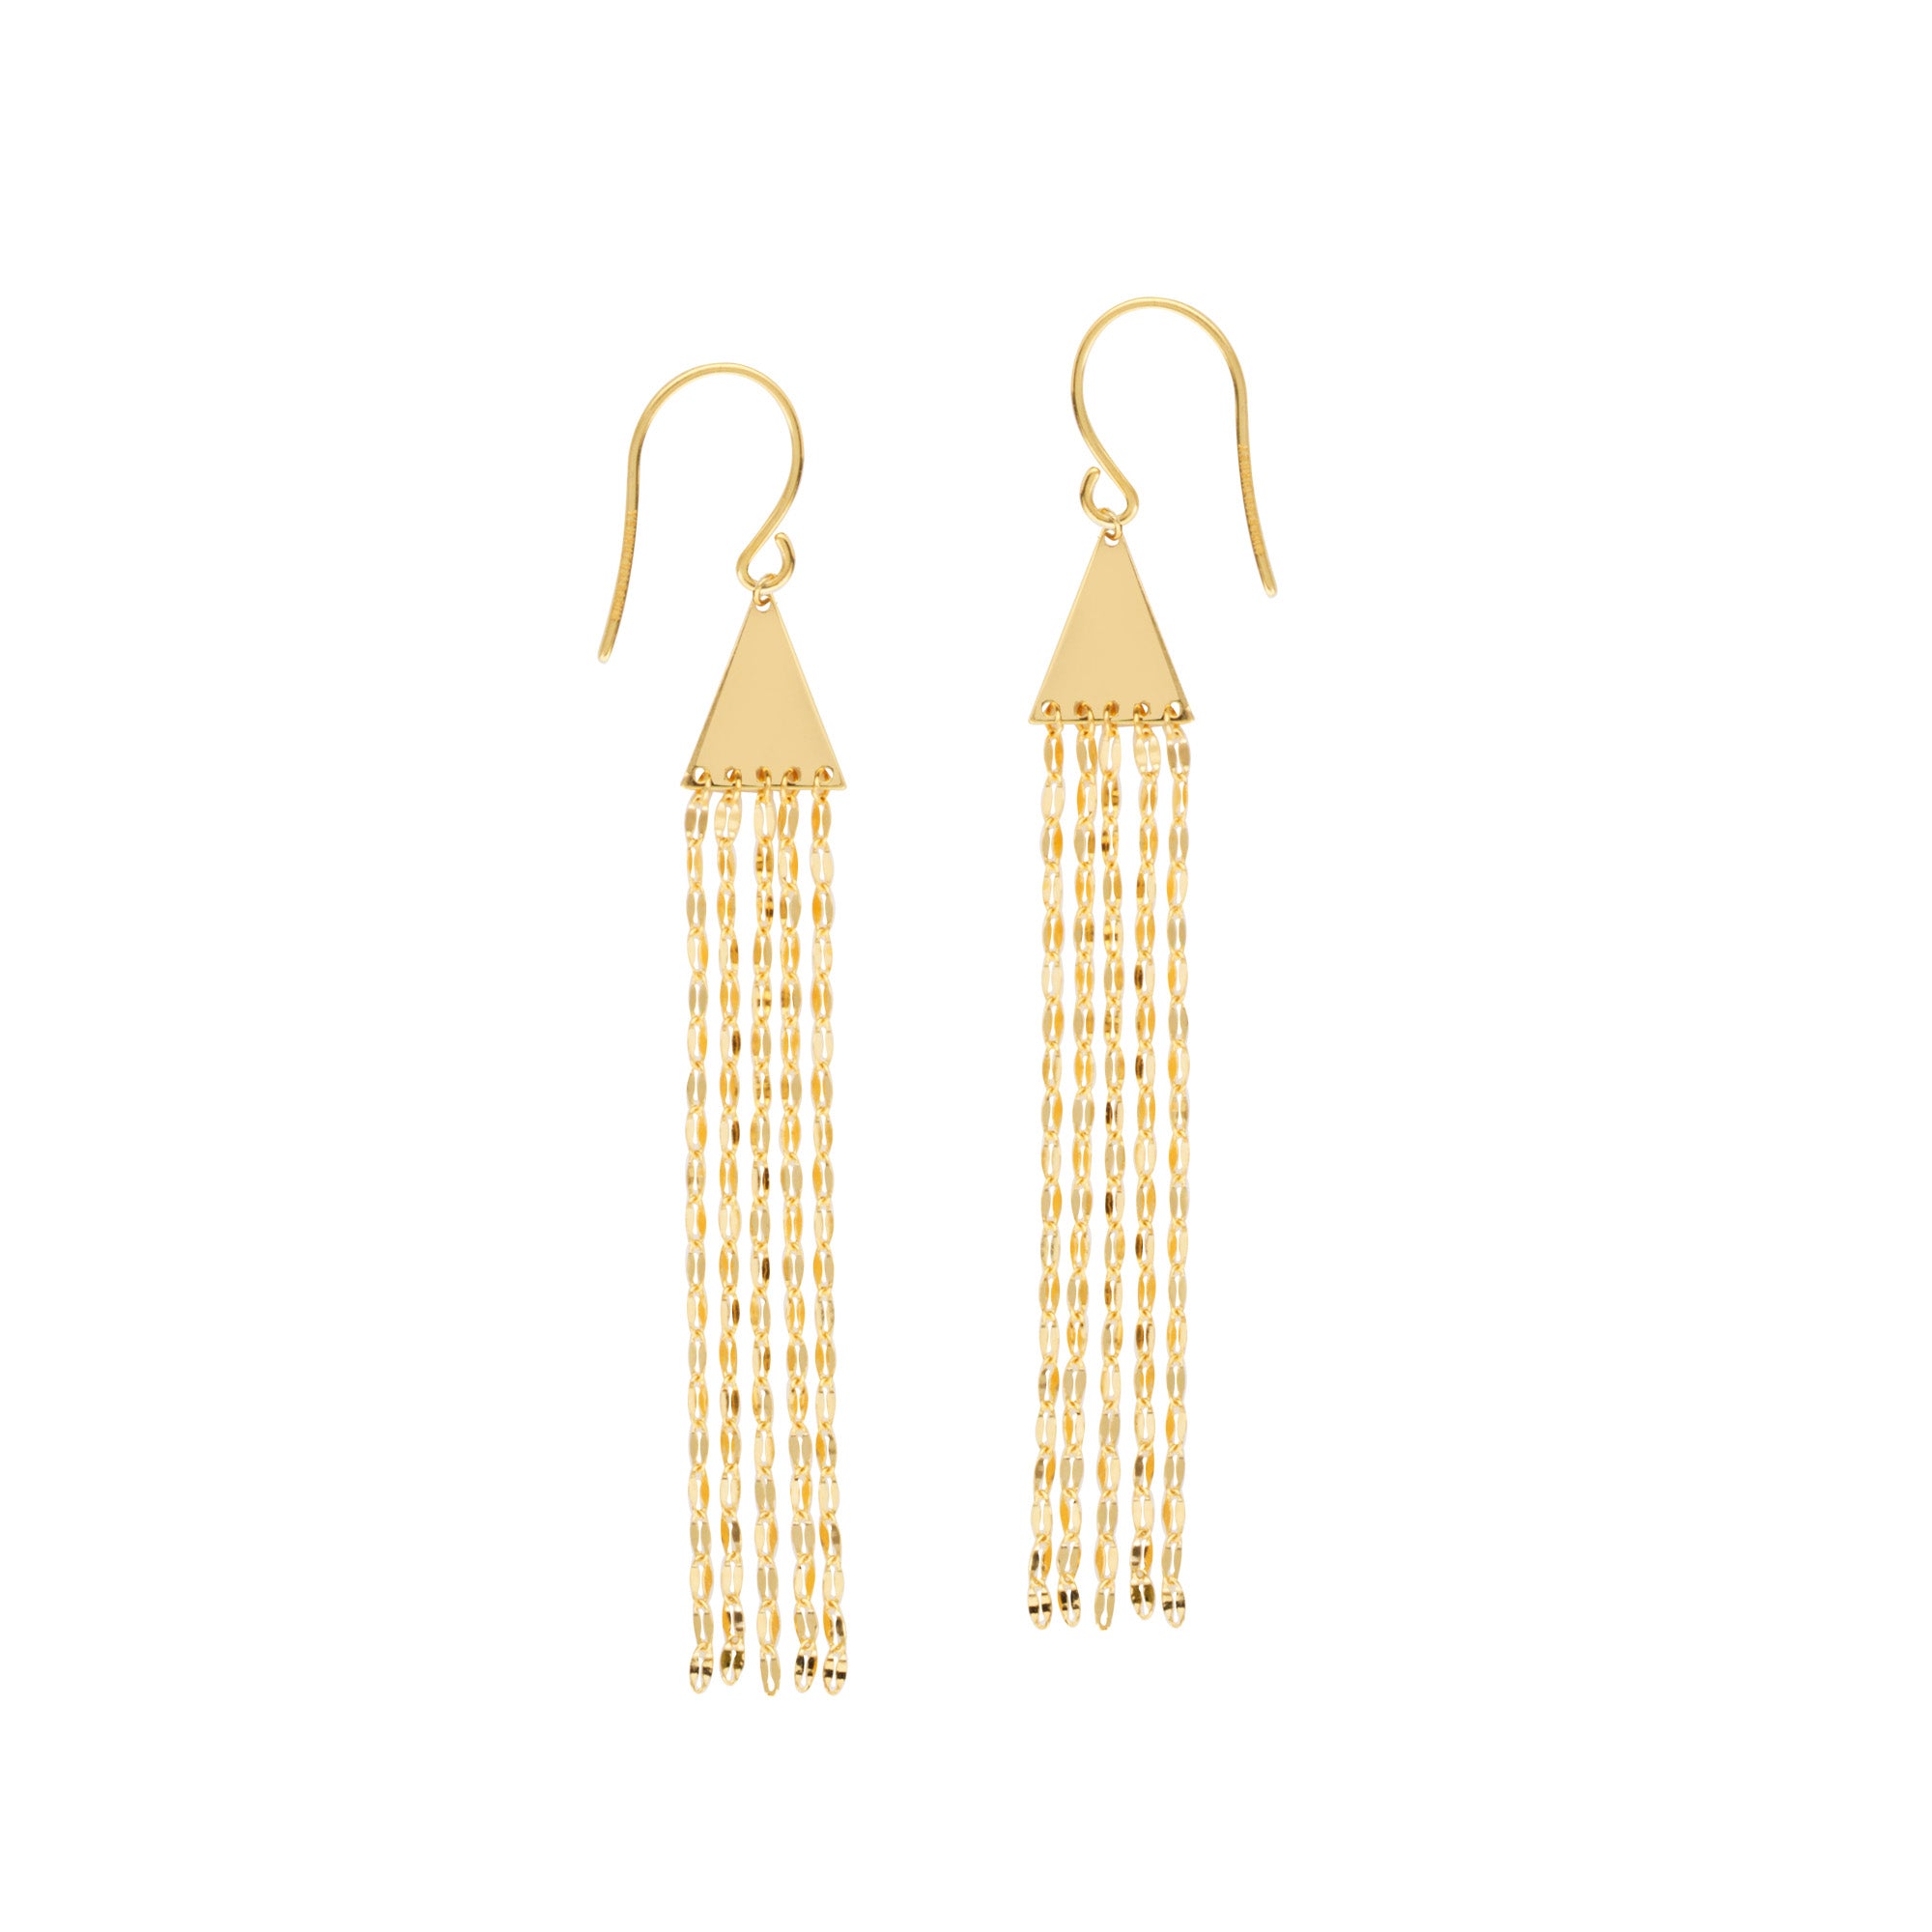 14K gul guld kvast dråbe øreringe fine designer smykker til mænd og kvinder